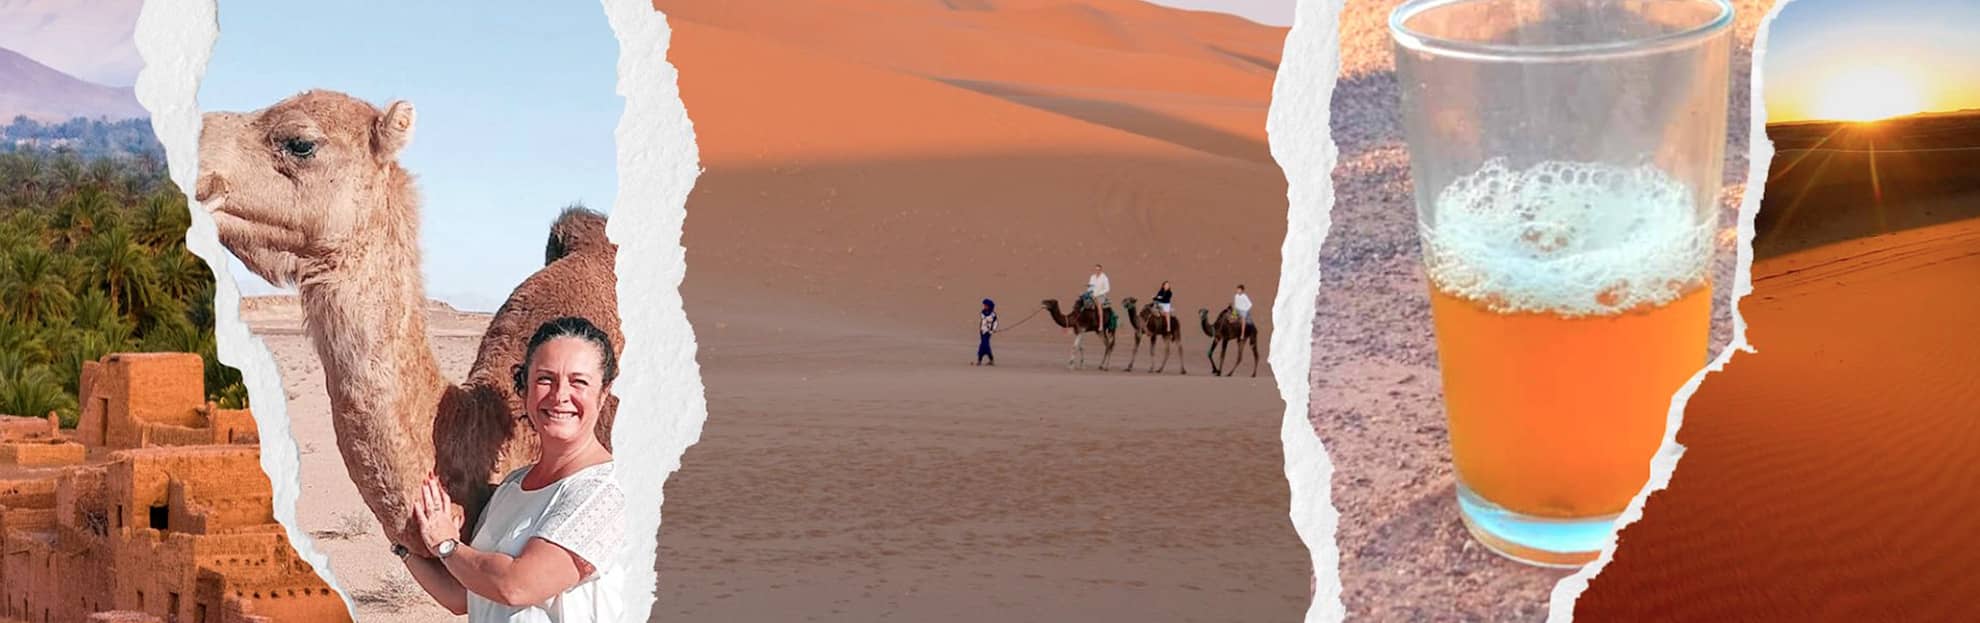 laeti-event-sejours-au-maroc-desert-100-pour-100-feminin(1)